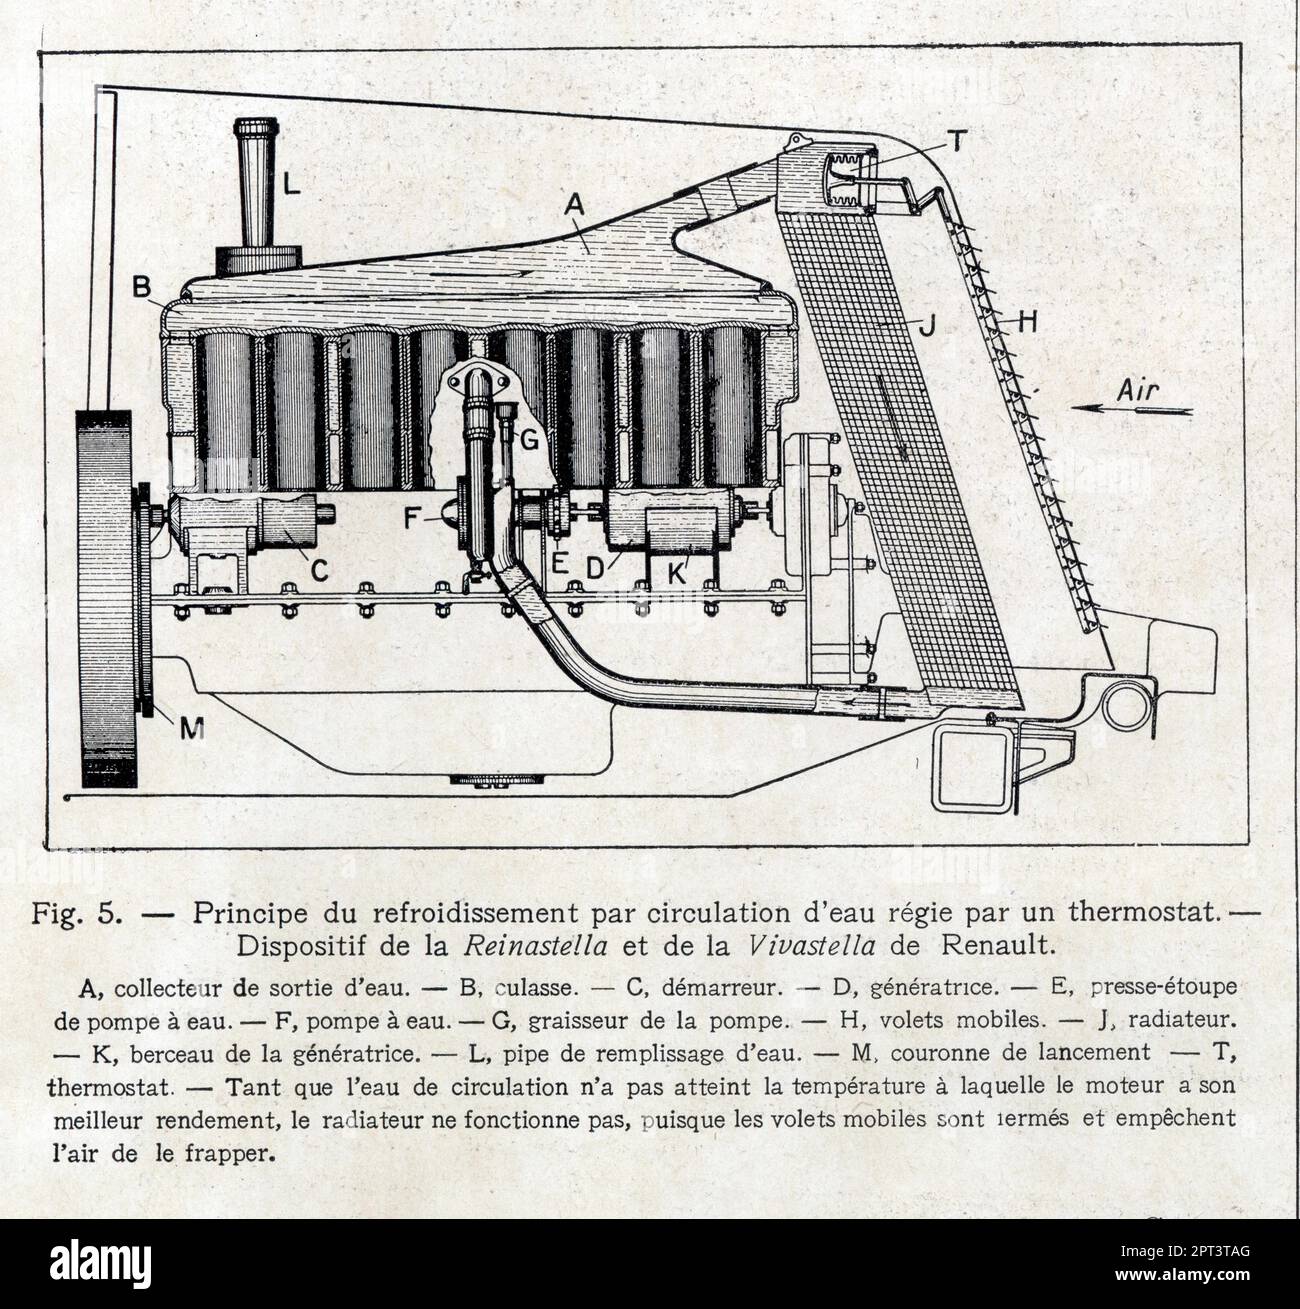 Principe du refroidissement par circulation d'eau régie par un thermostat. Dispositif de la Reinastella et de la Vivastella de Renault. 1929 Stock Photo